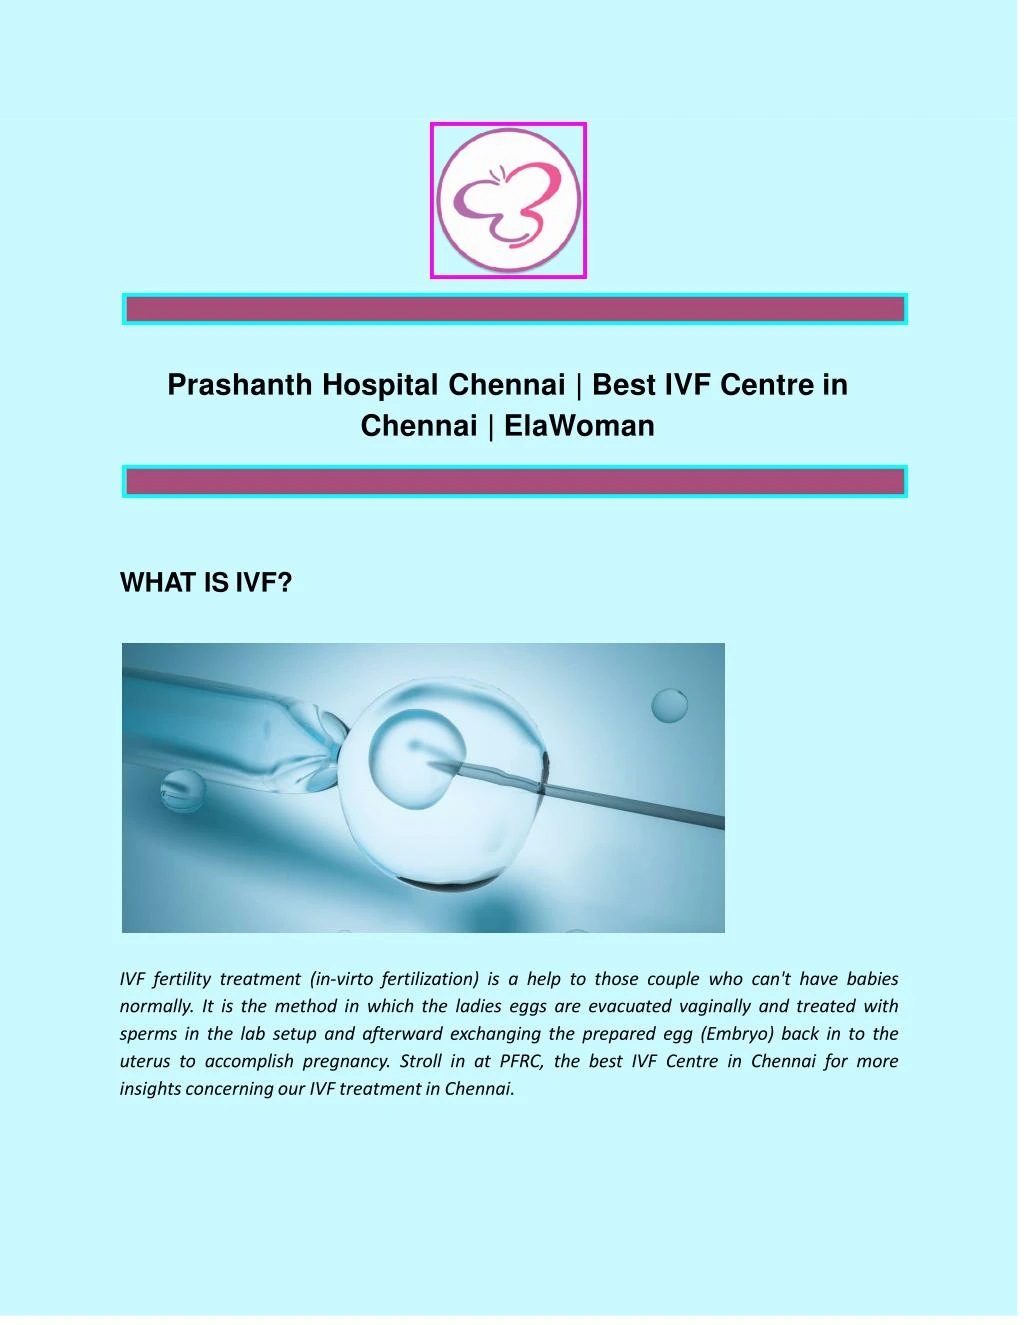 prashanth hospital chennai best ivf centre